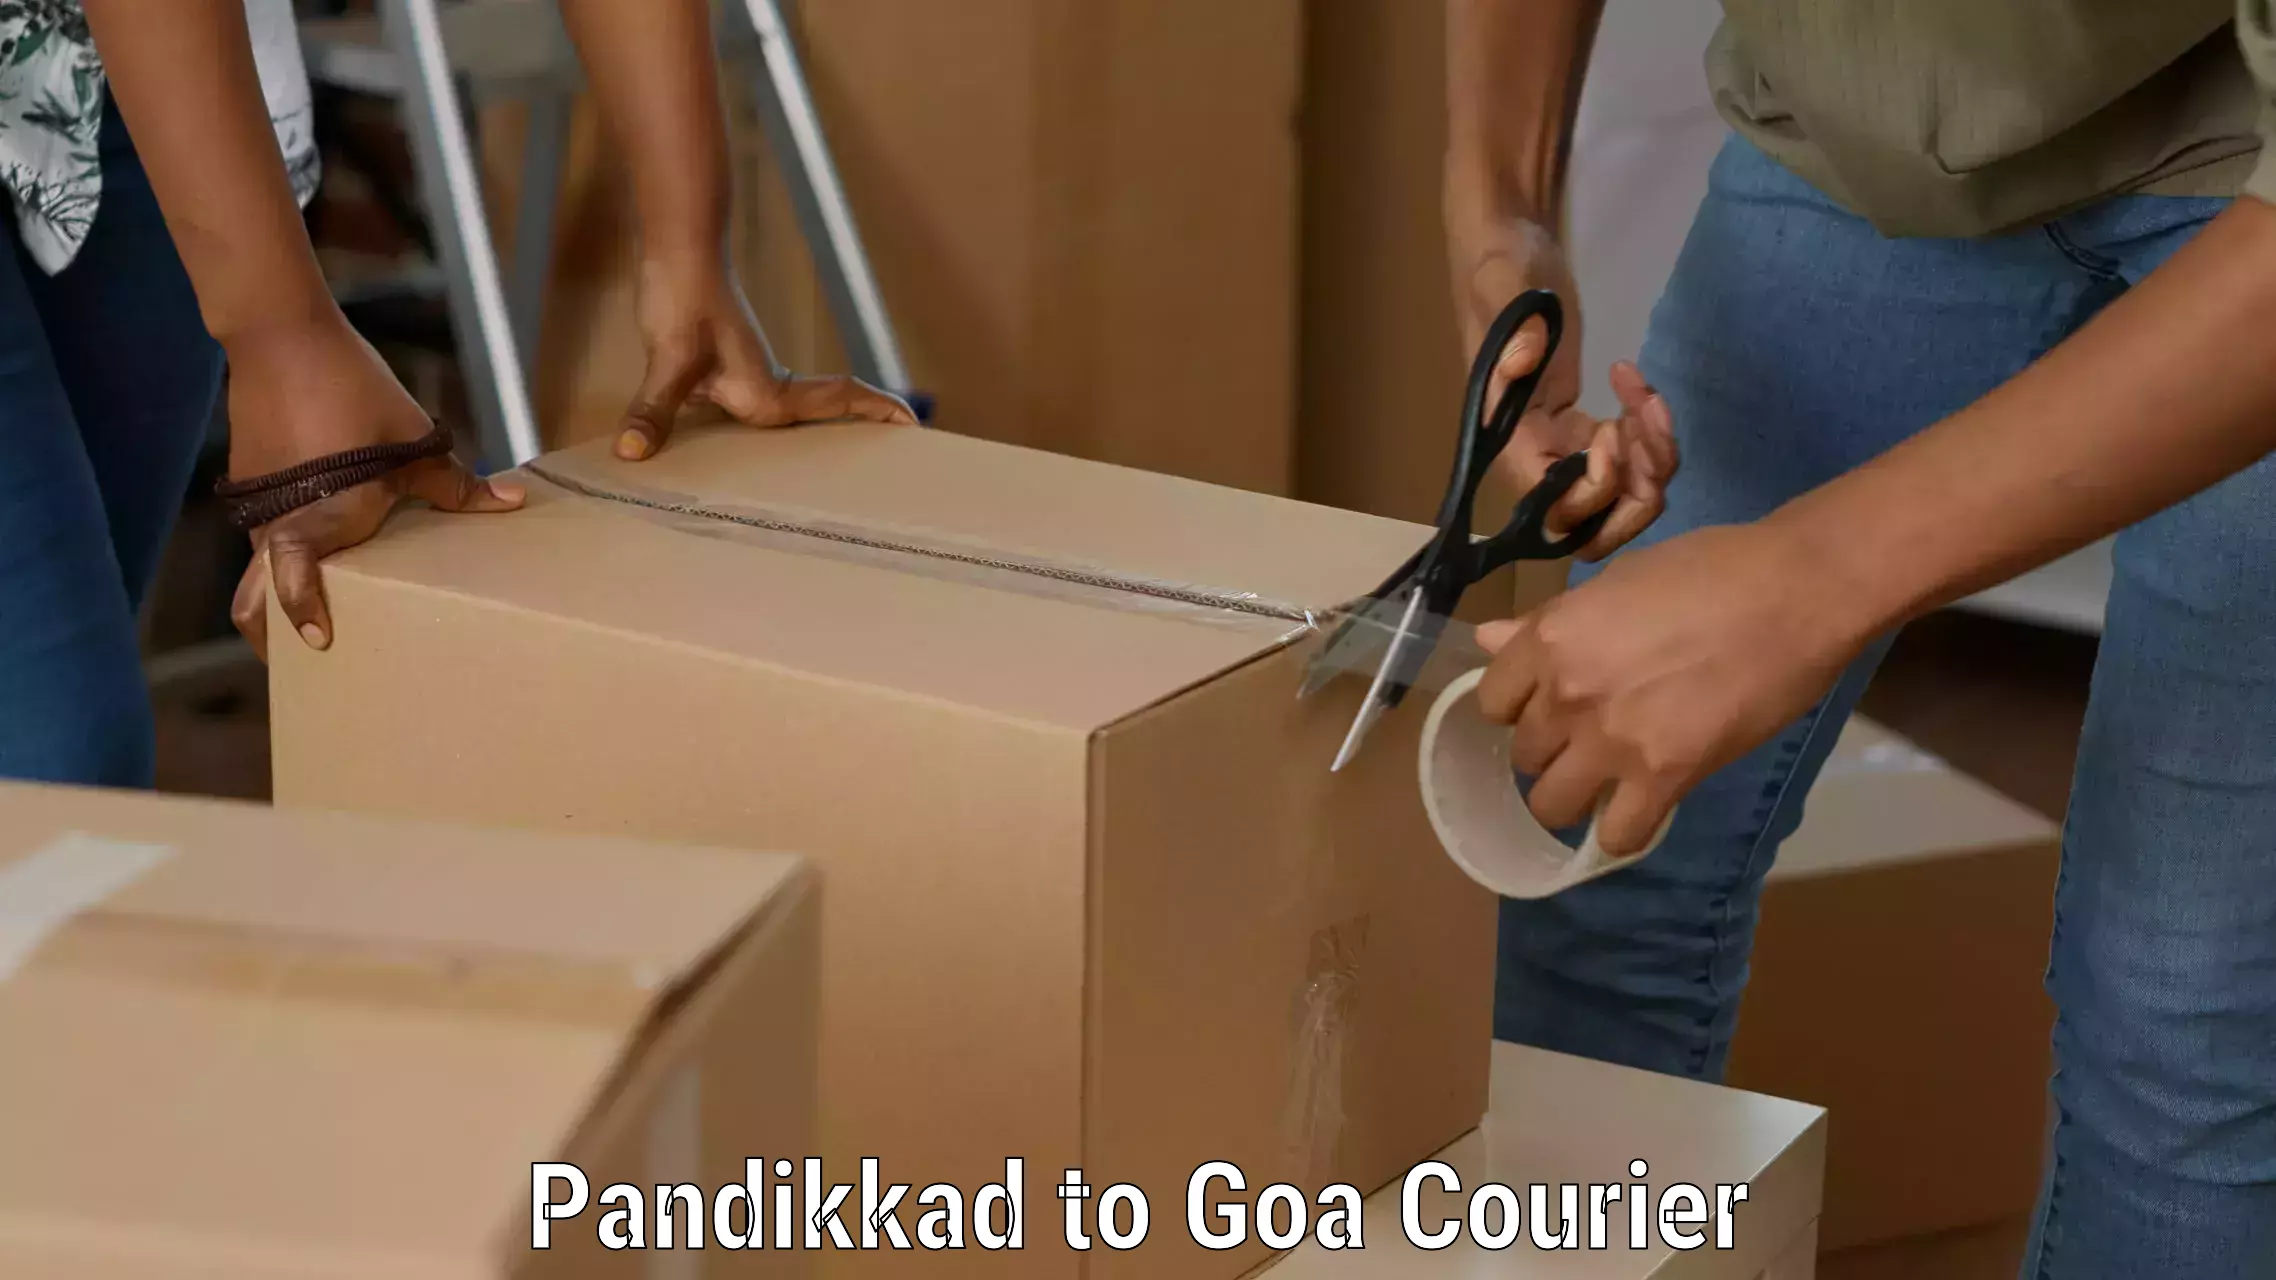 Nationwide shipping capabilities Pandikkad to IIT Goa